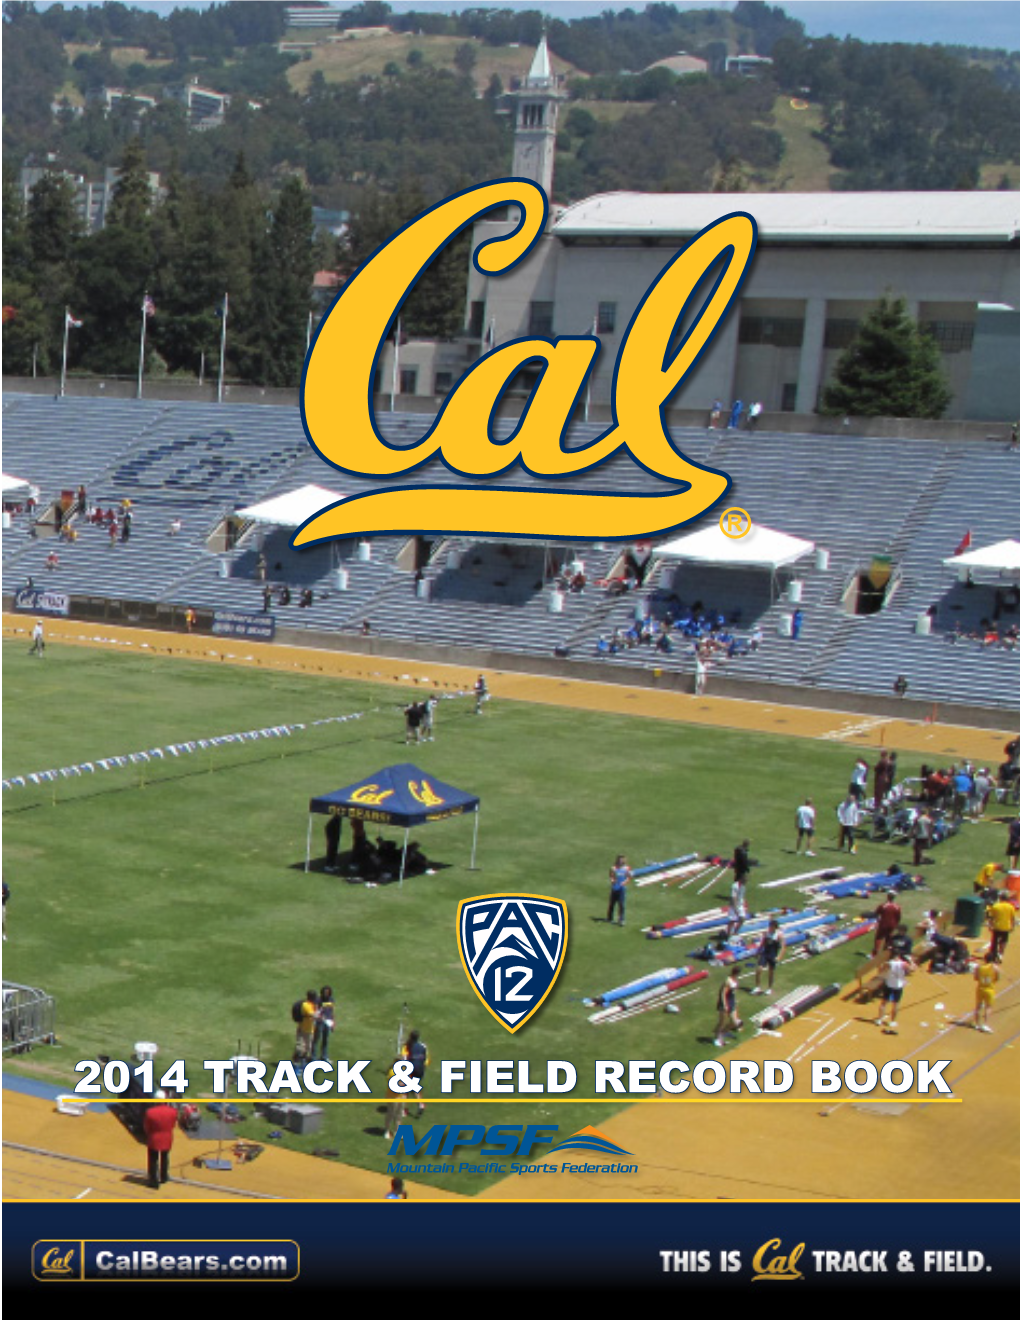 2014 Track & Field Record Book